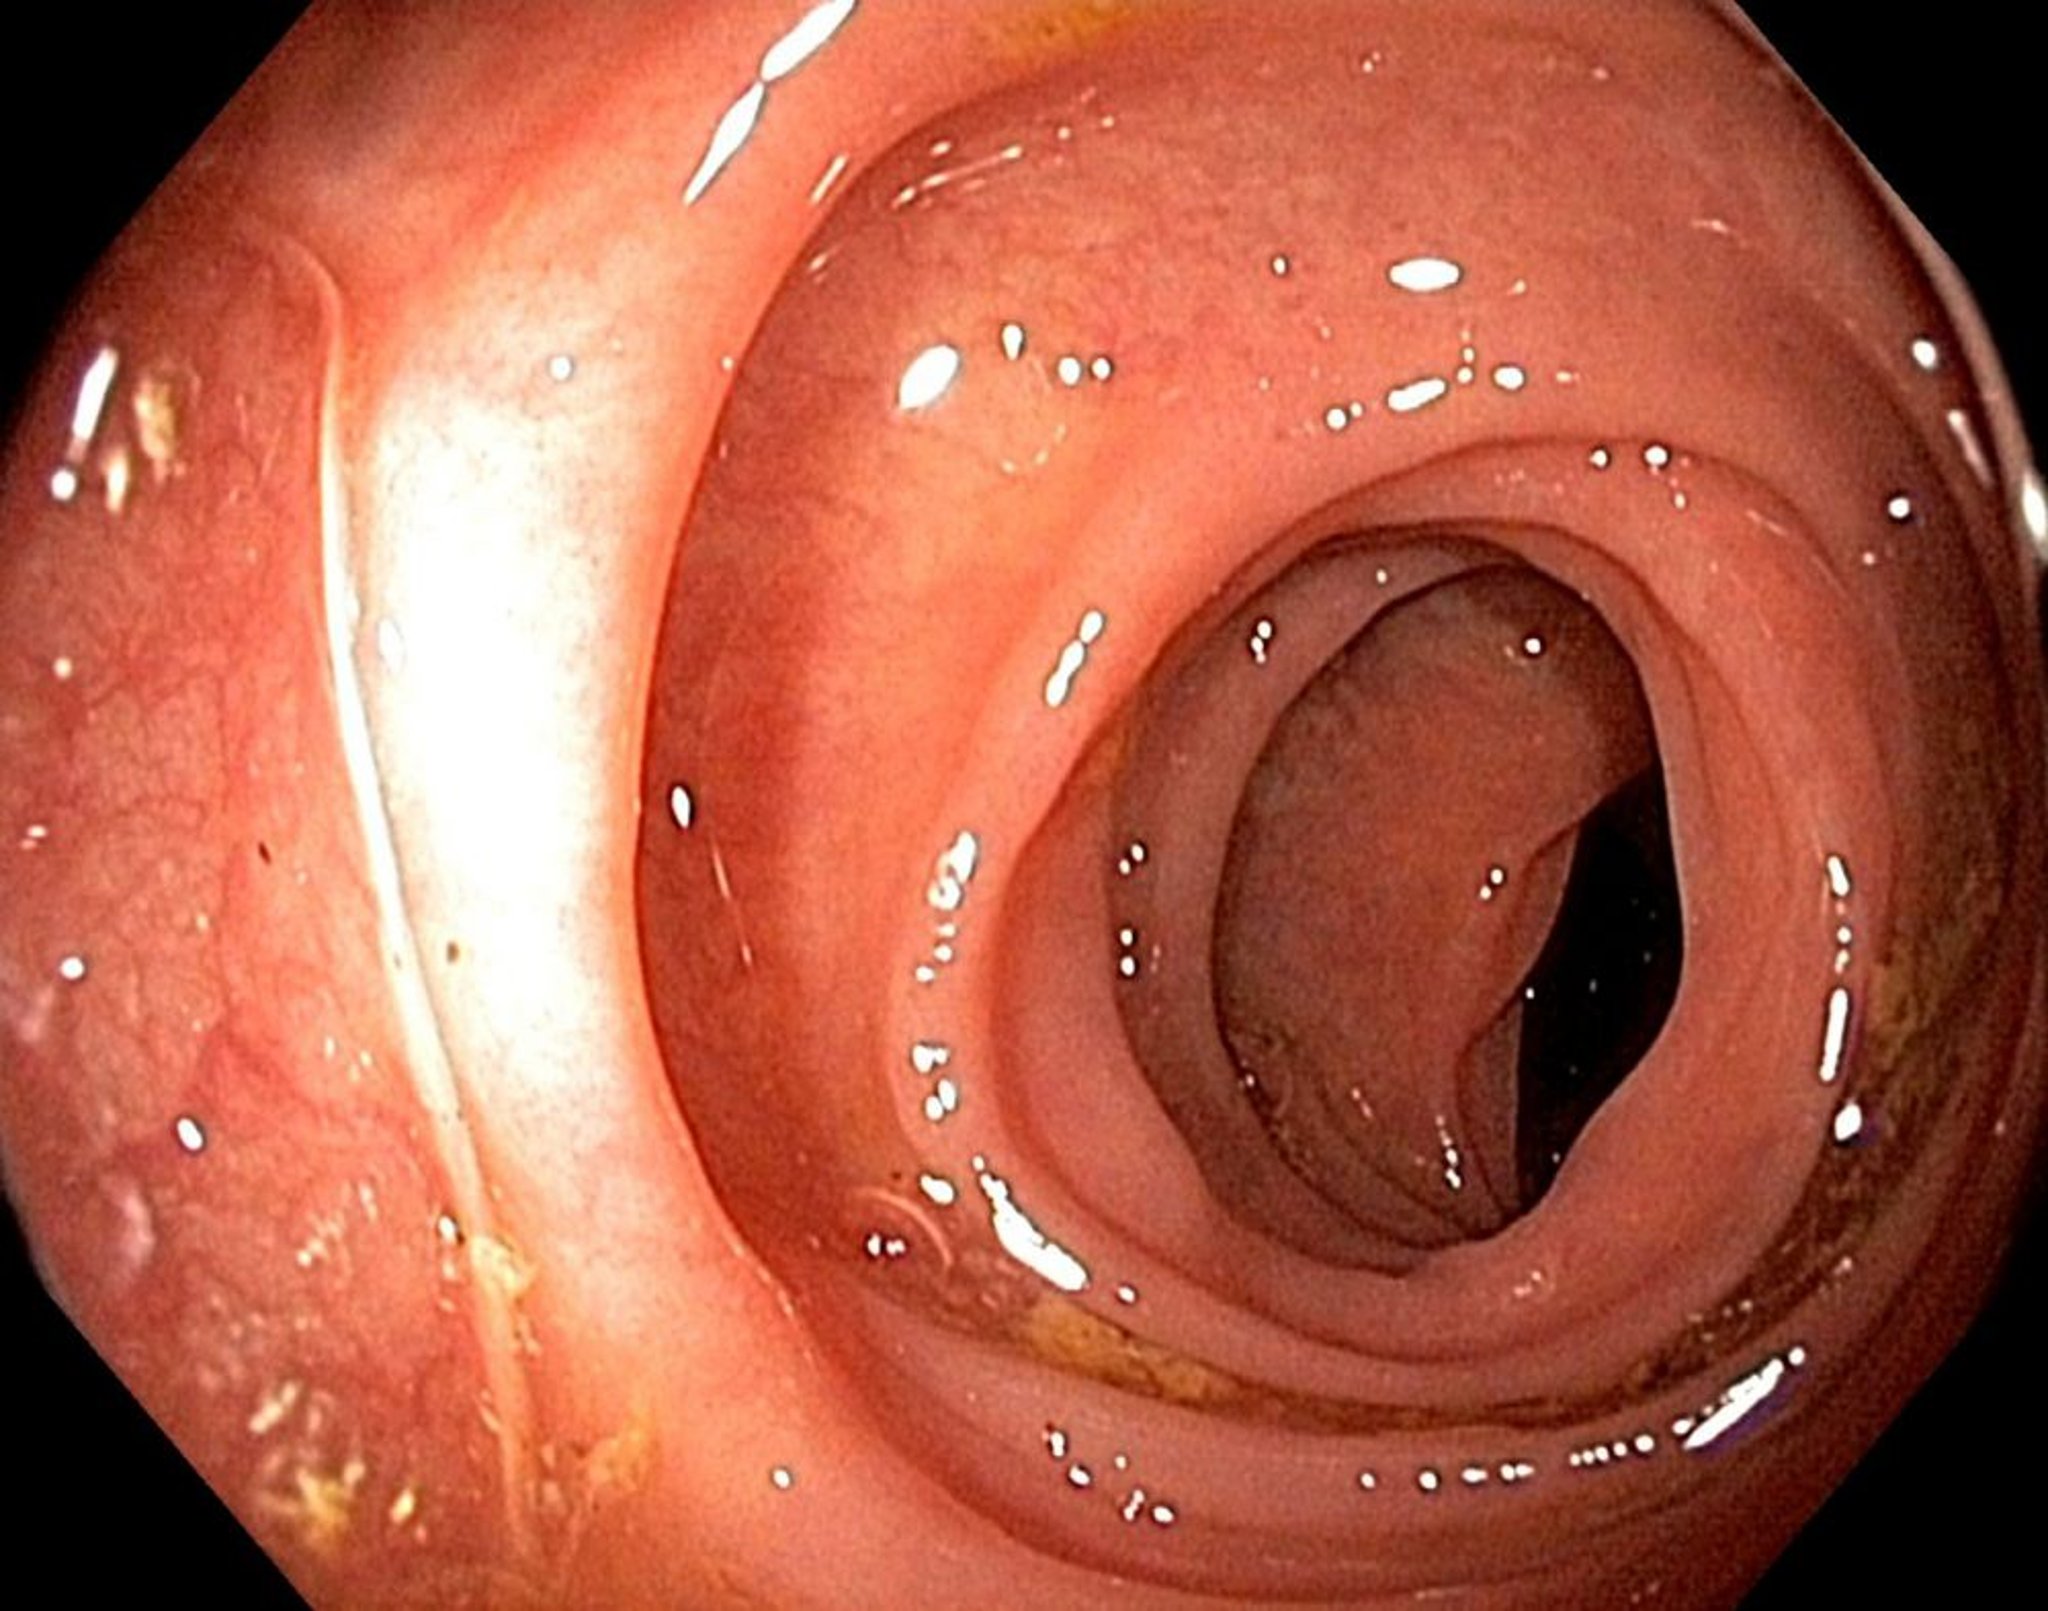 Endoscopia (intestino grueso)